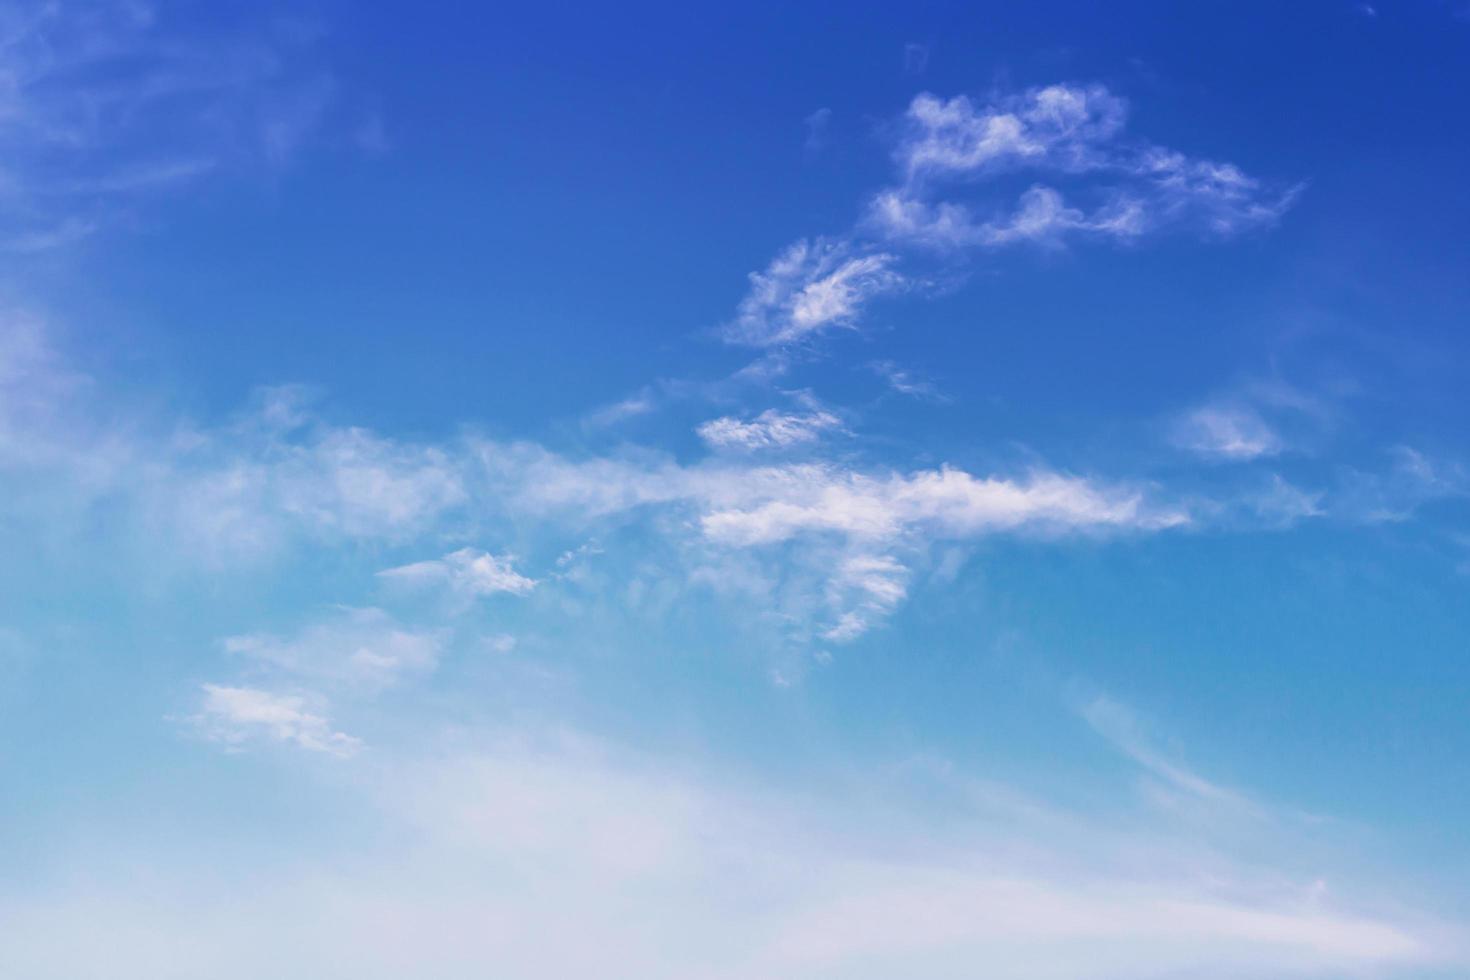 blå himmel med moln foto